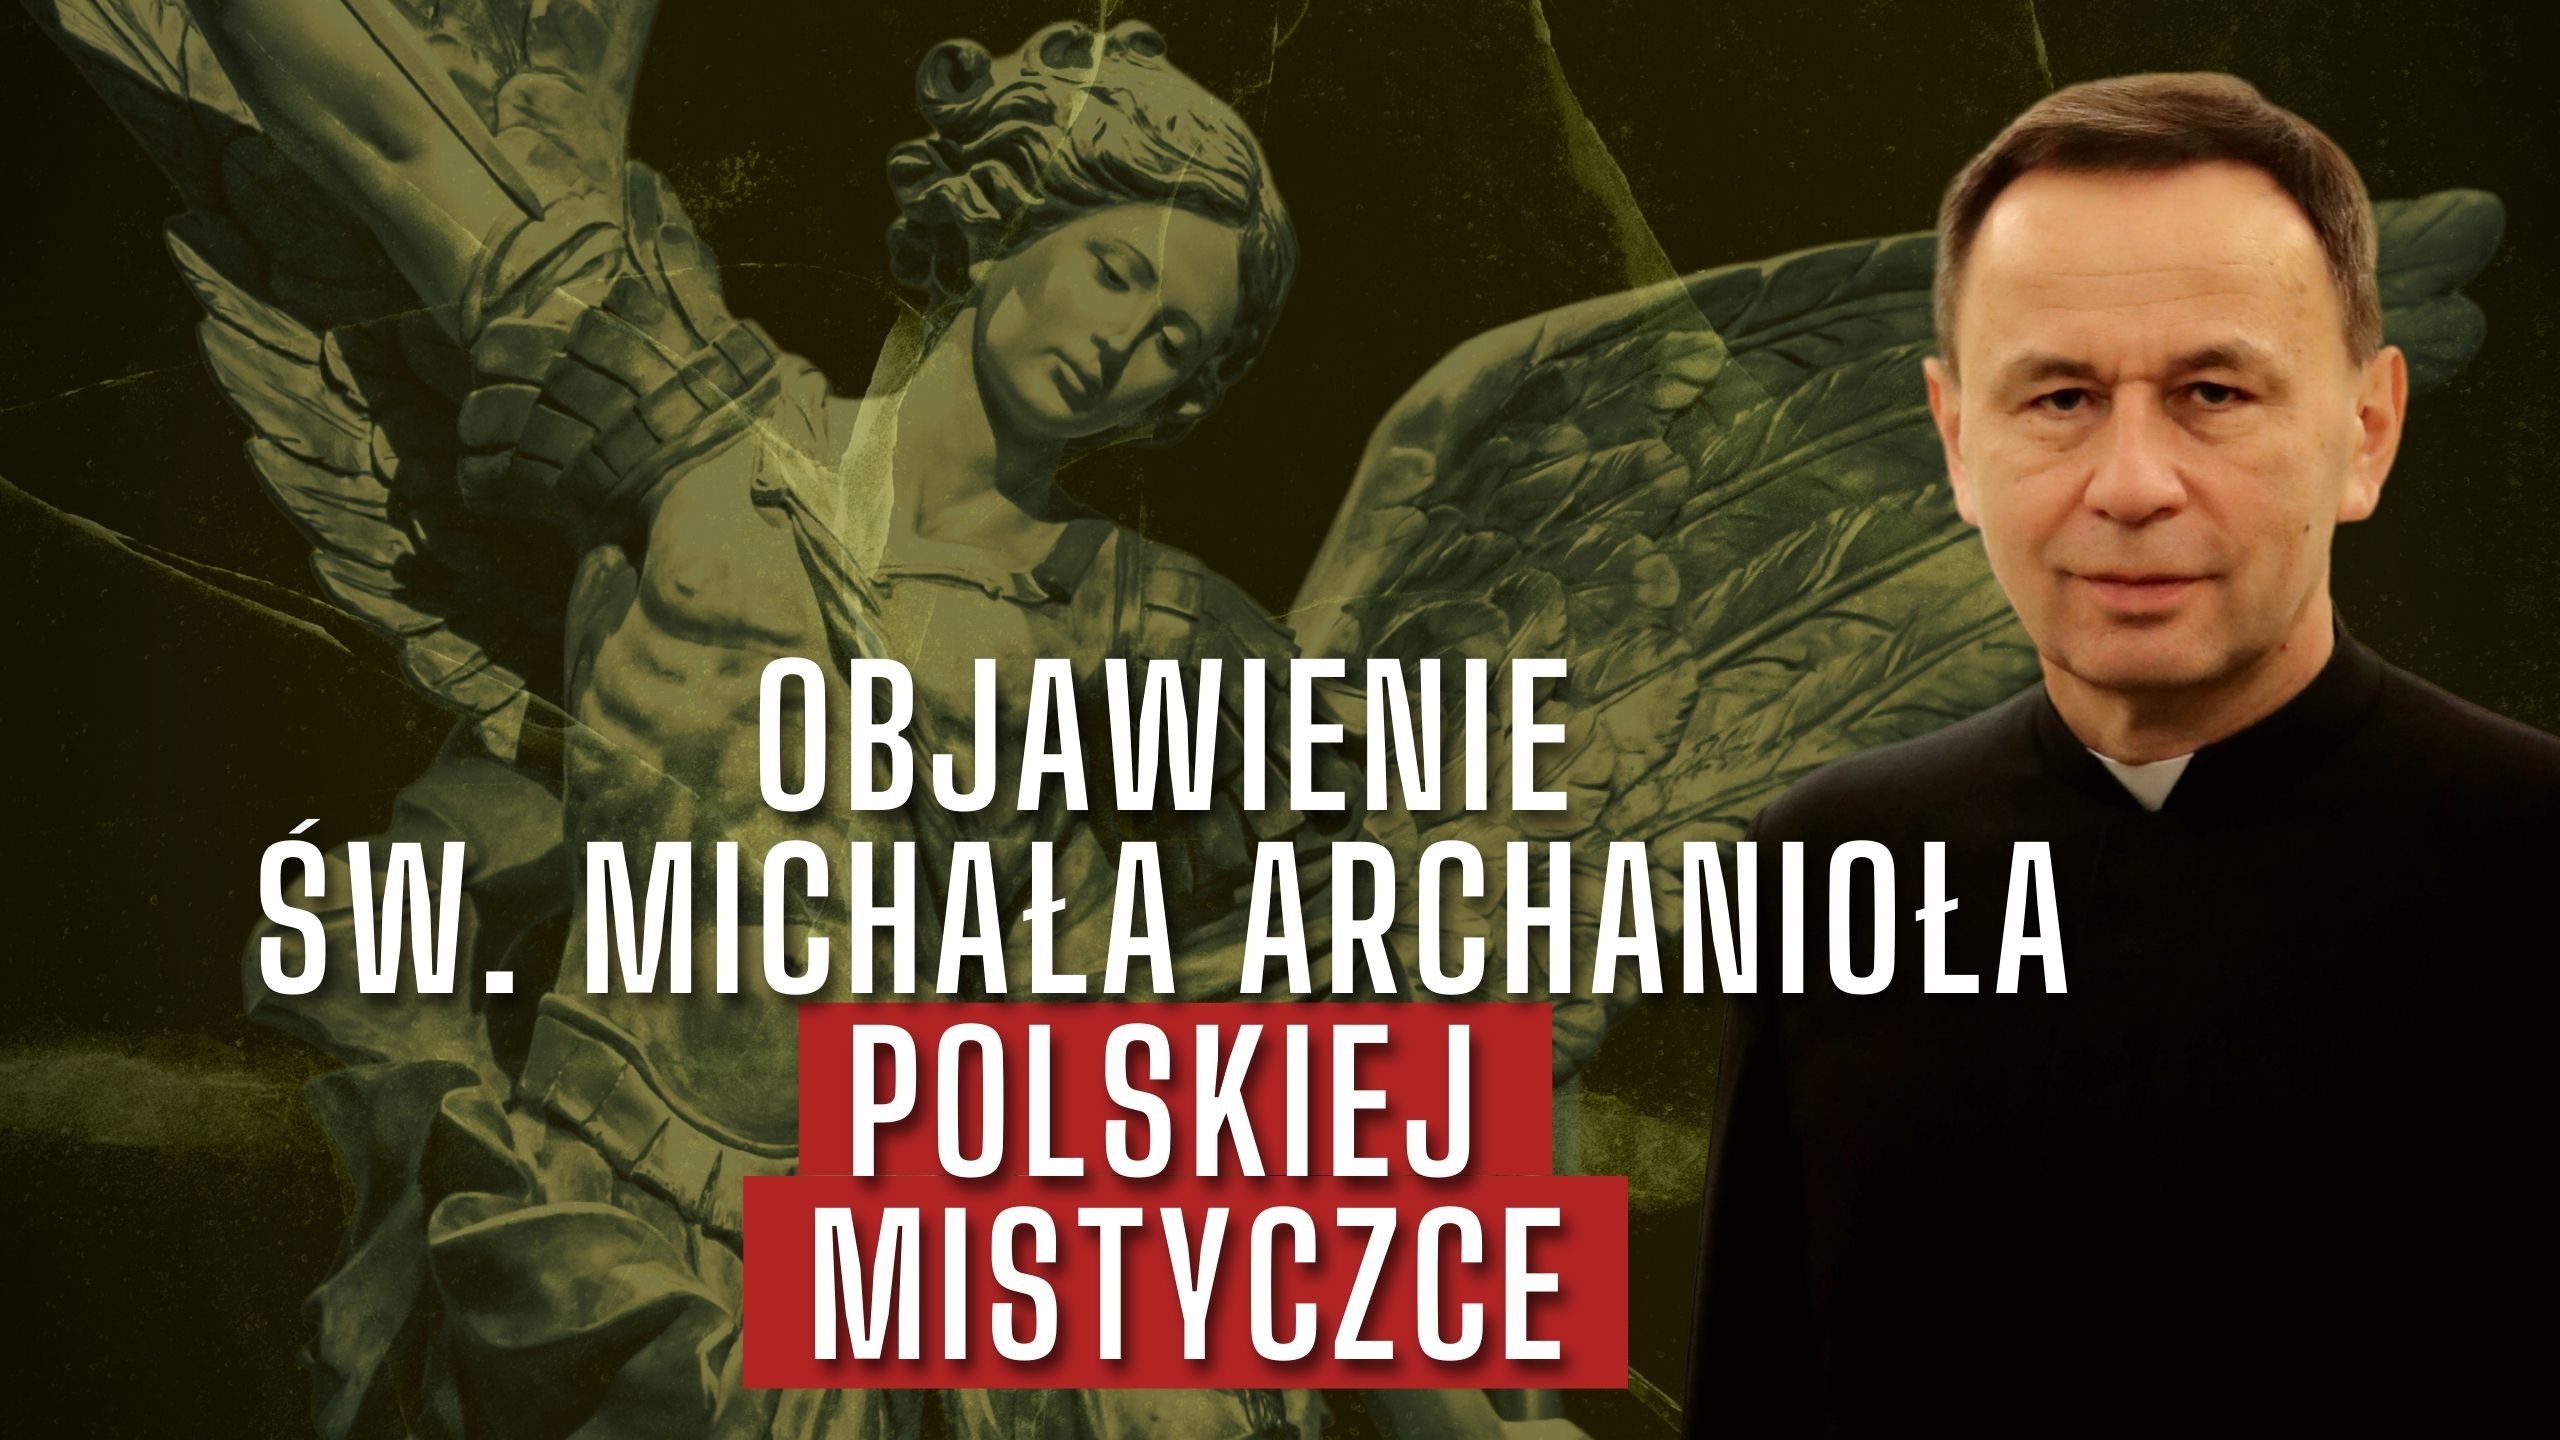 Objawienie św. Michała Archanioła POLSKIEJ MISTYCZCE